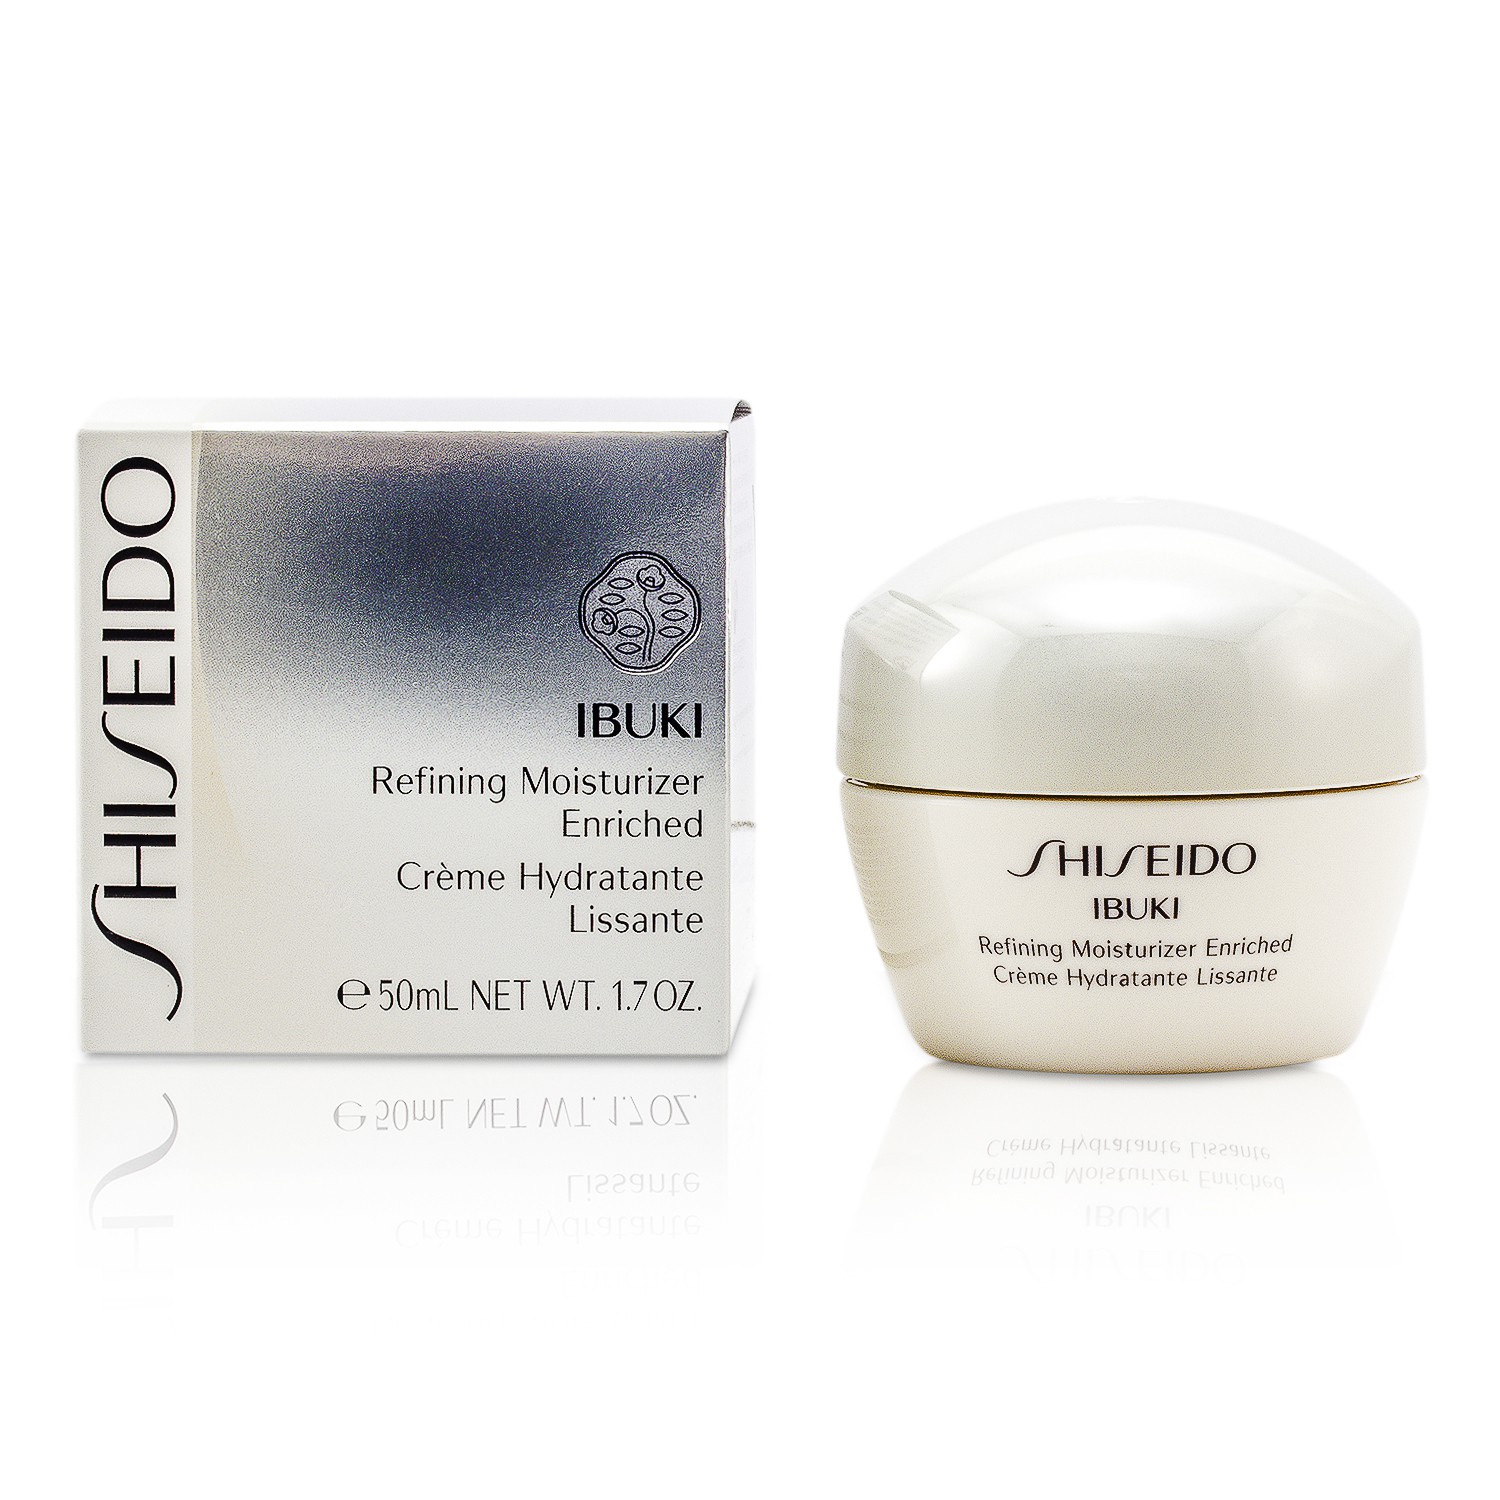 Shiseido IBUKI לחות מזקקת מועשרת 50ml/1.7oz